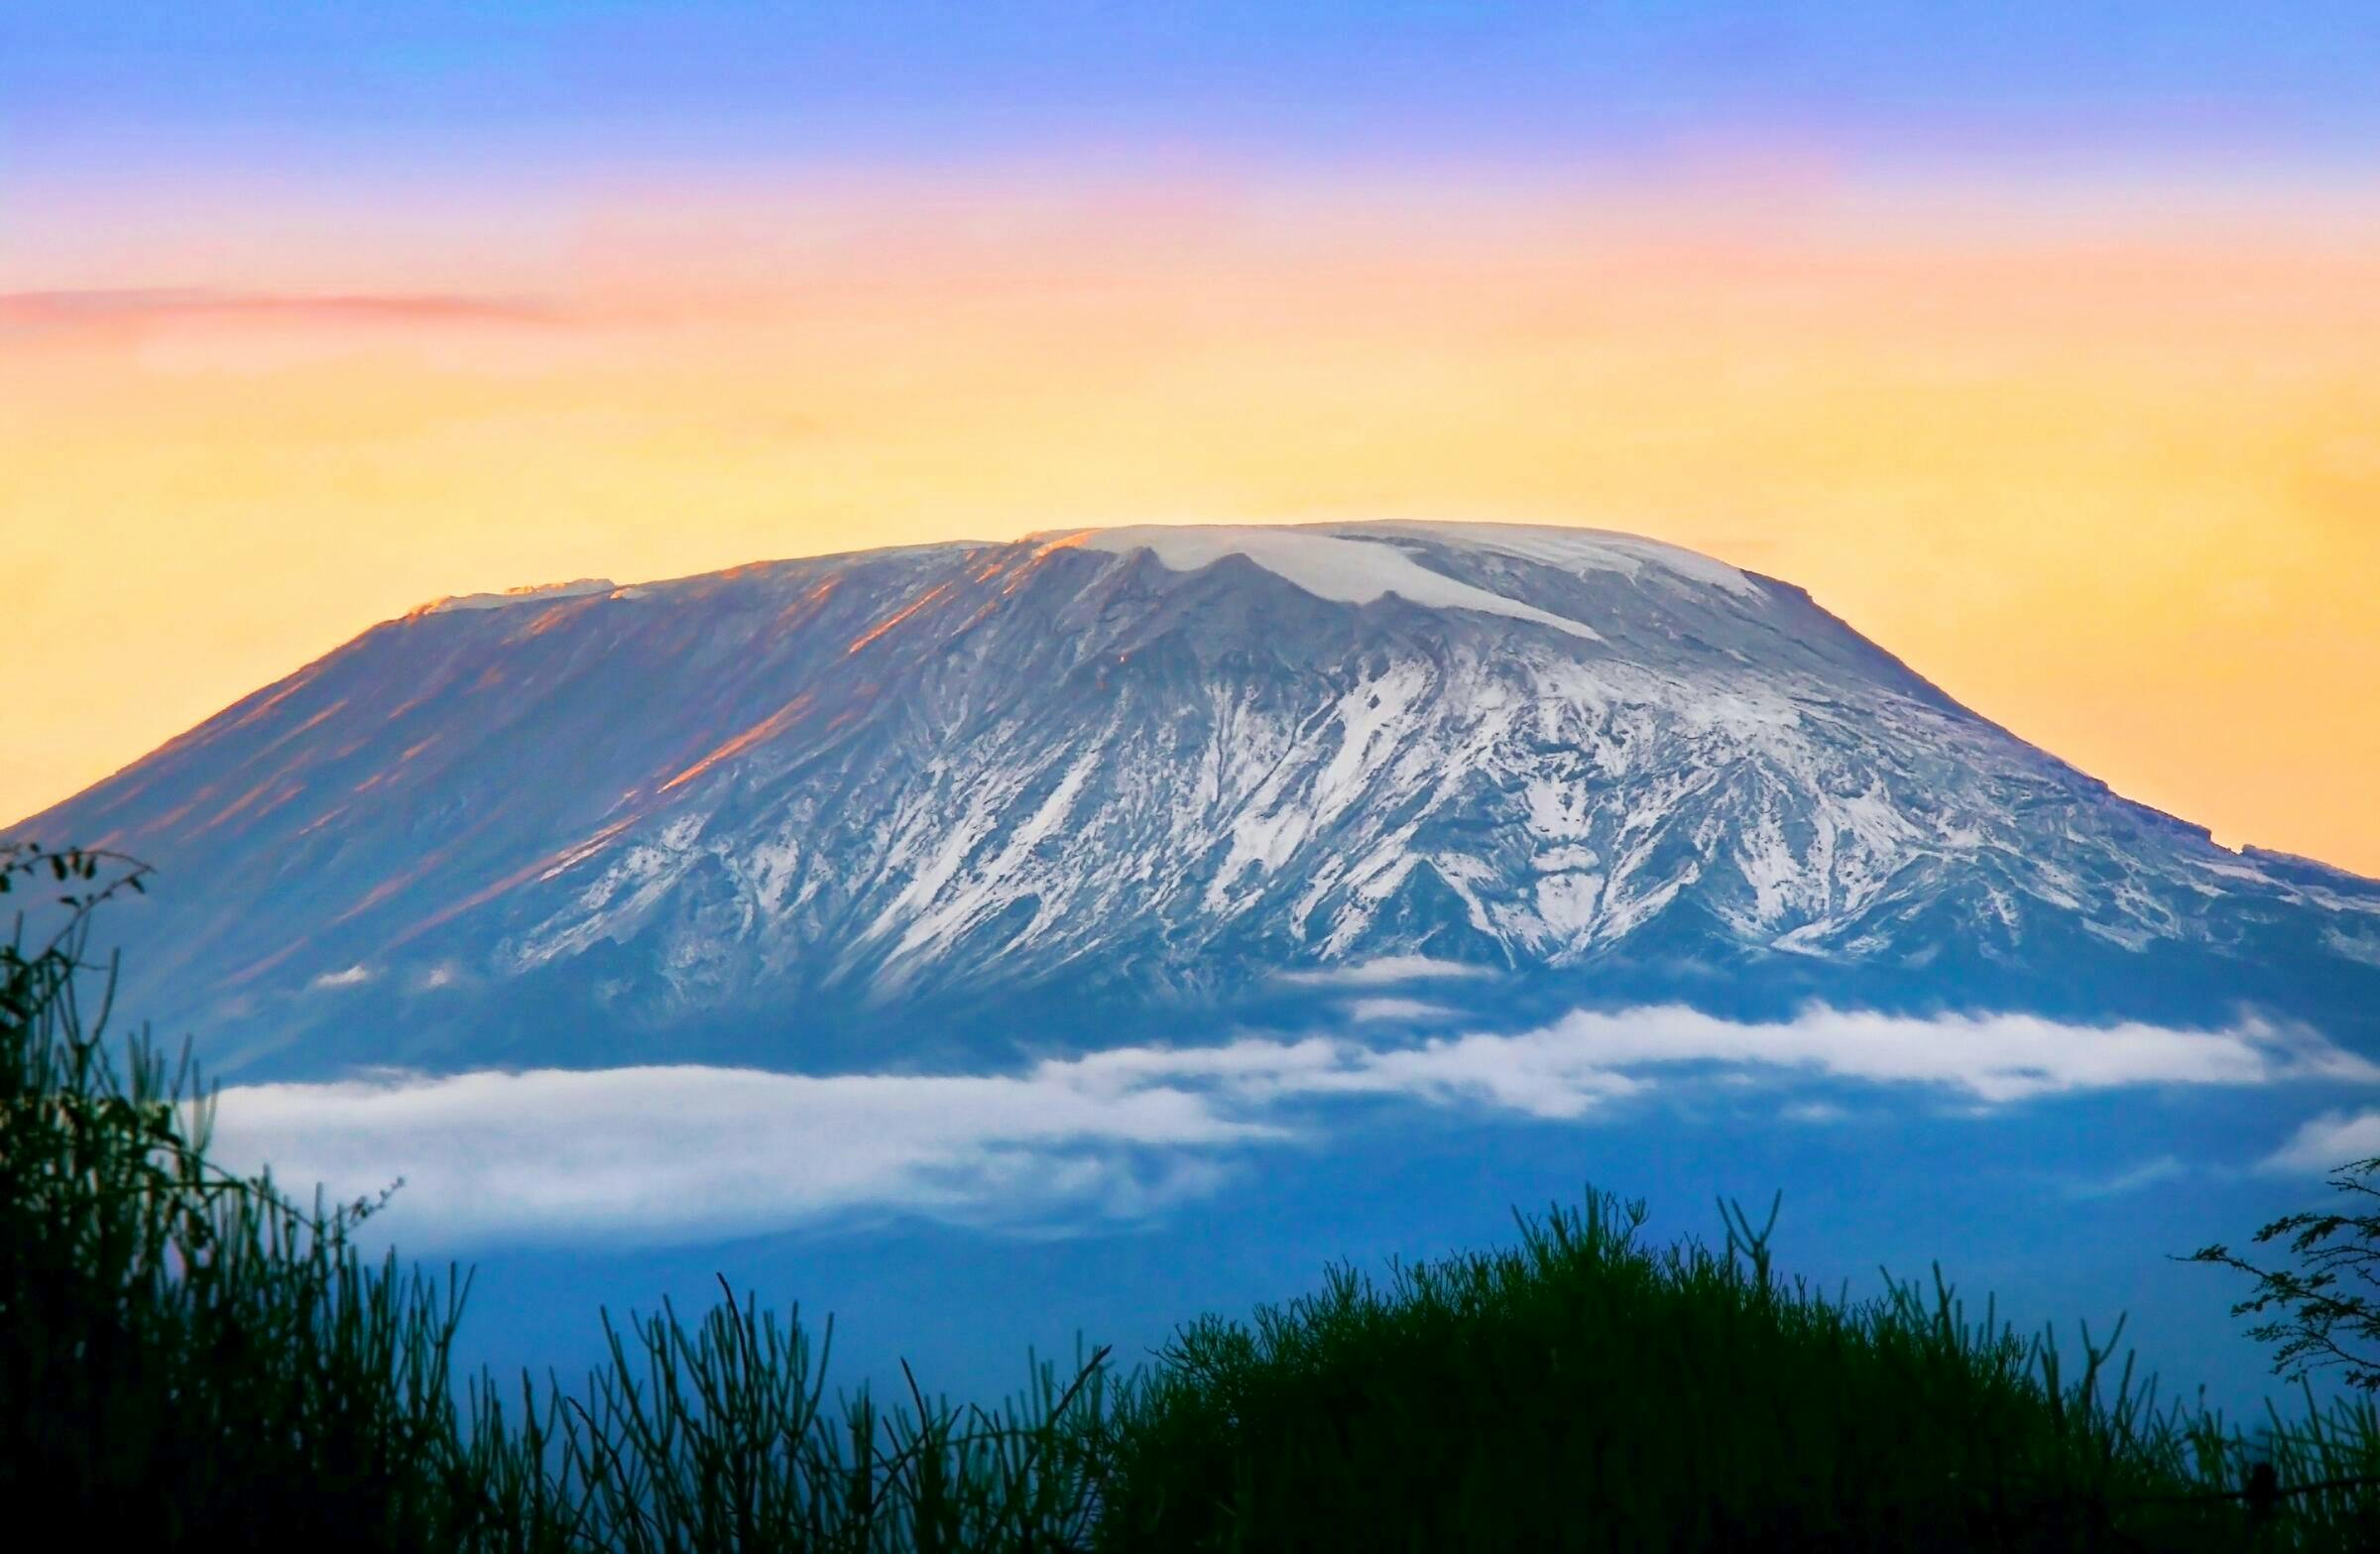 kilimanjaro at sunset